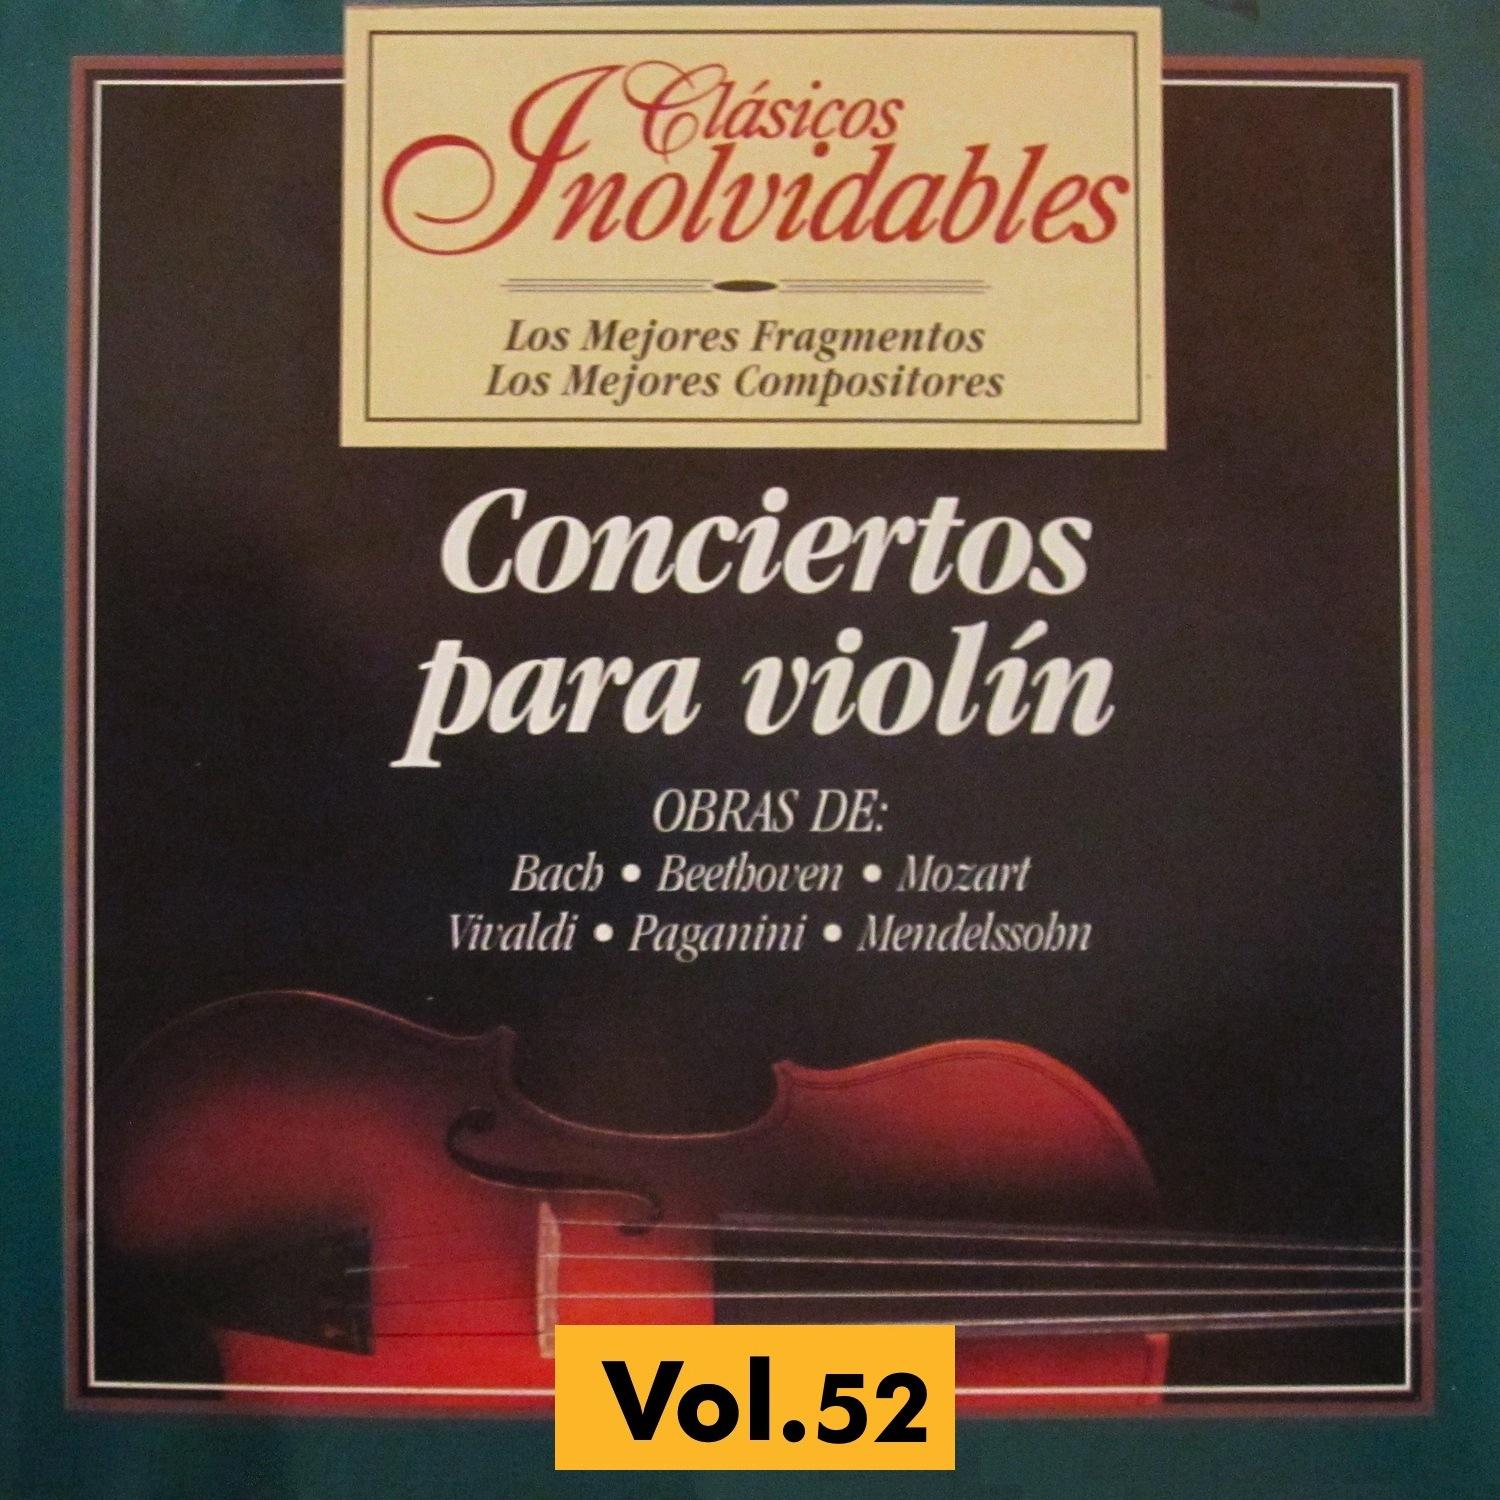 Cla sicos Inolvidables Vol. 52, Conciertos para Violi n